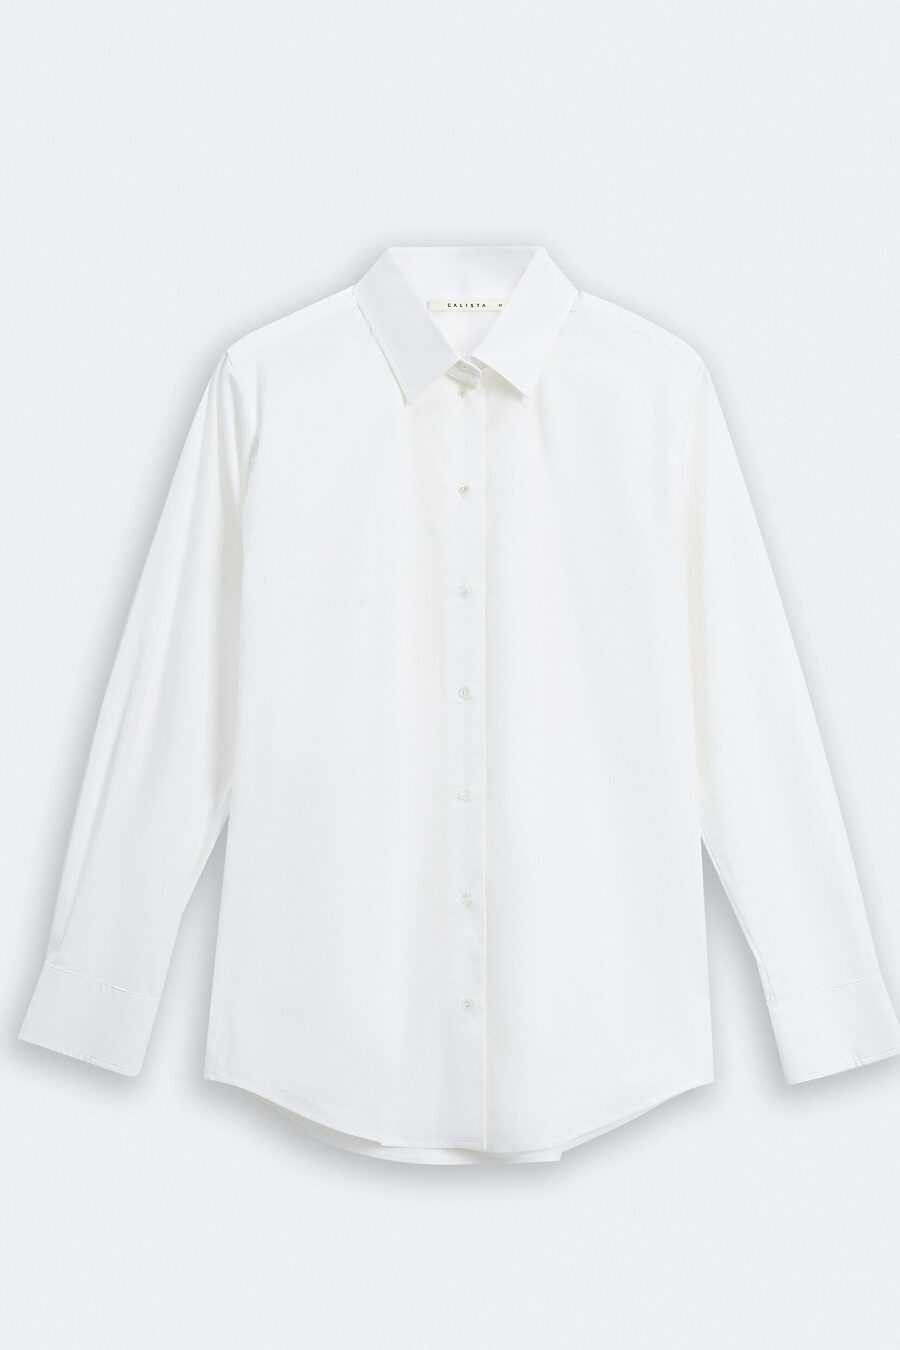 Блуза для женщин CALISTA 796405 купить оптом от производителя. Совместная покупка женской одежды в OptMoyo